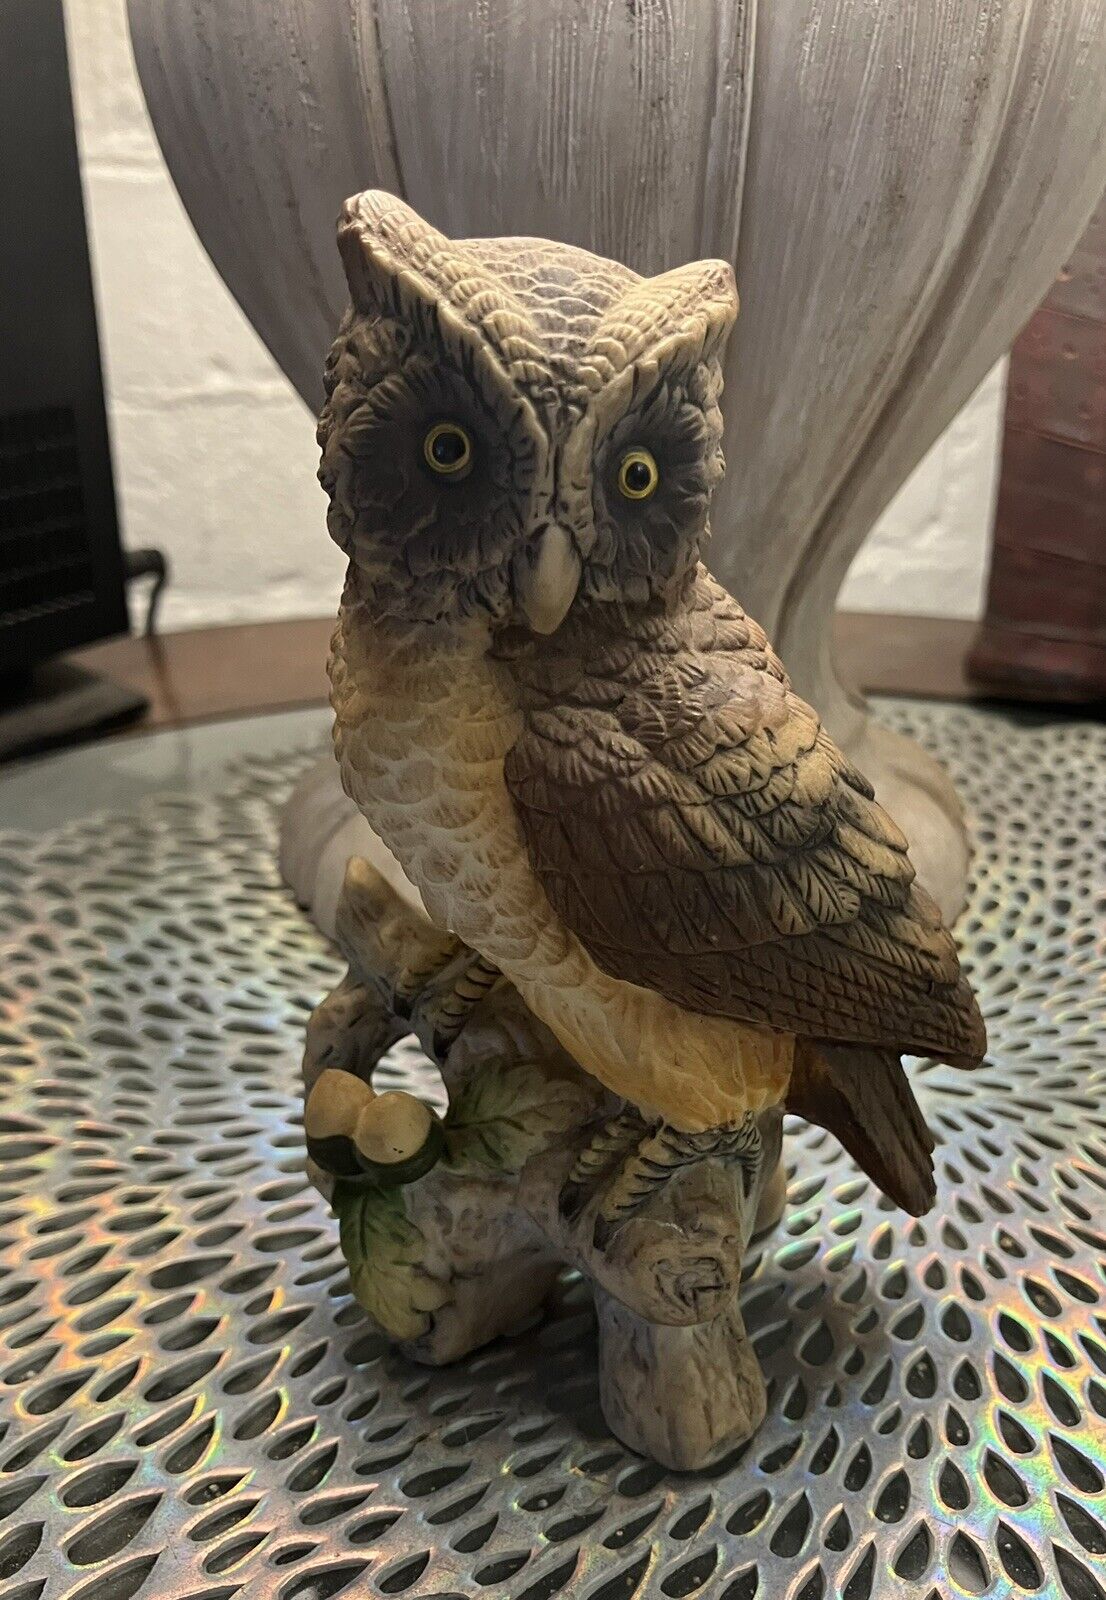 Vintage Lefton Owl Figurine 5.5” Tall Hand Painted